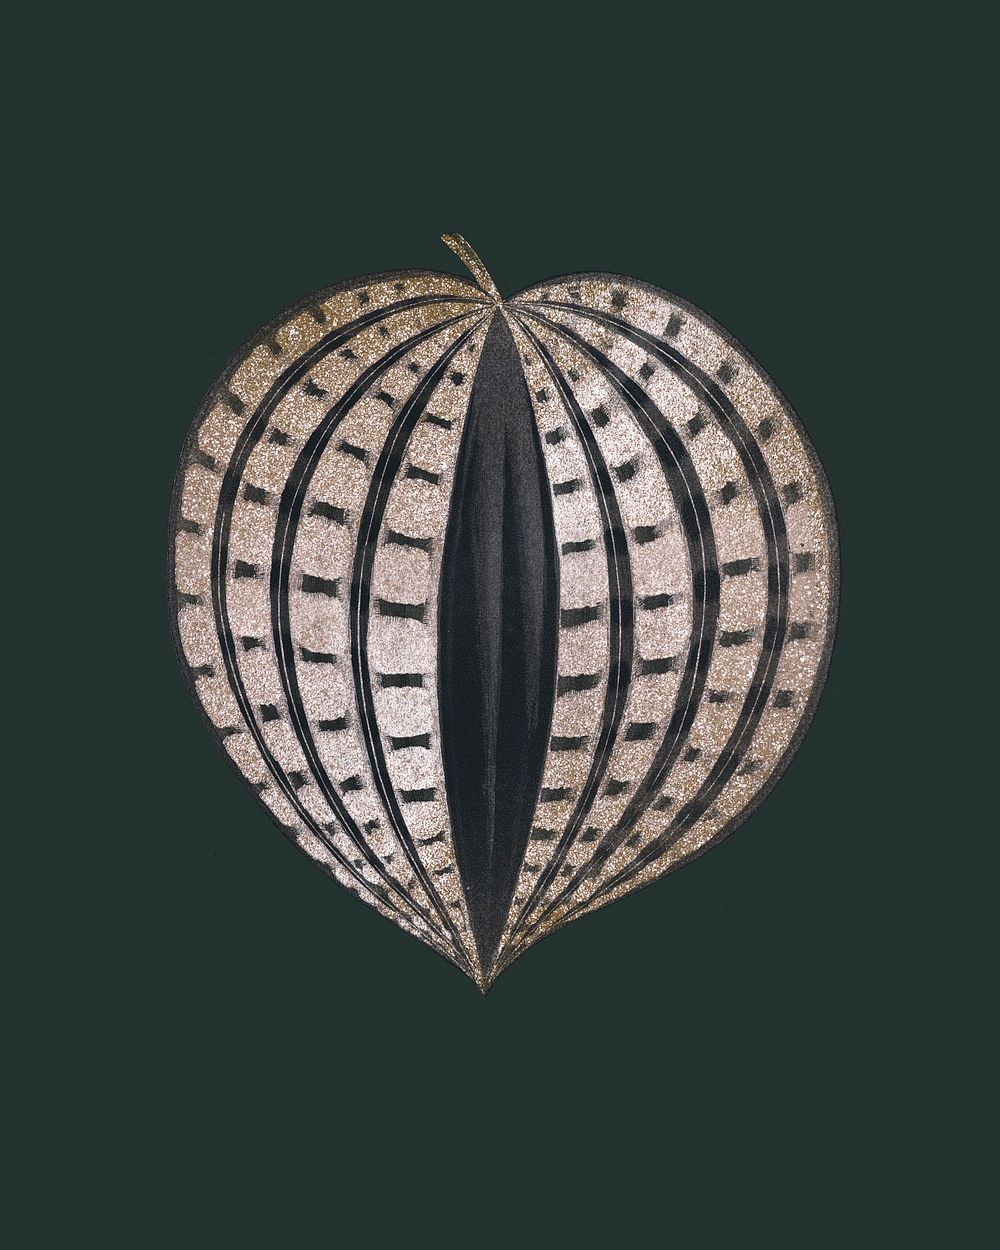 Seersucker leaf, remix from original artwork by Benjamin Fawcett